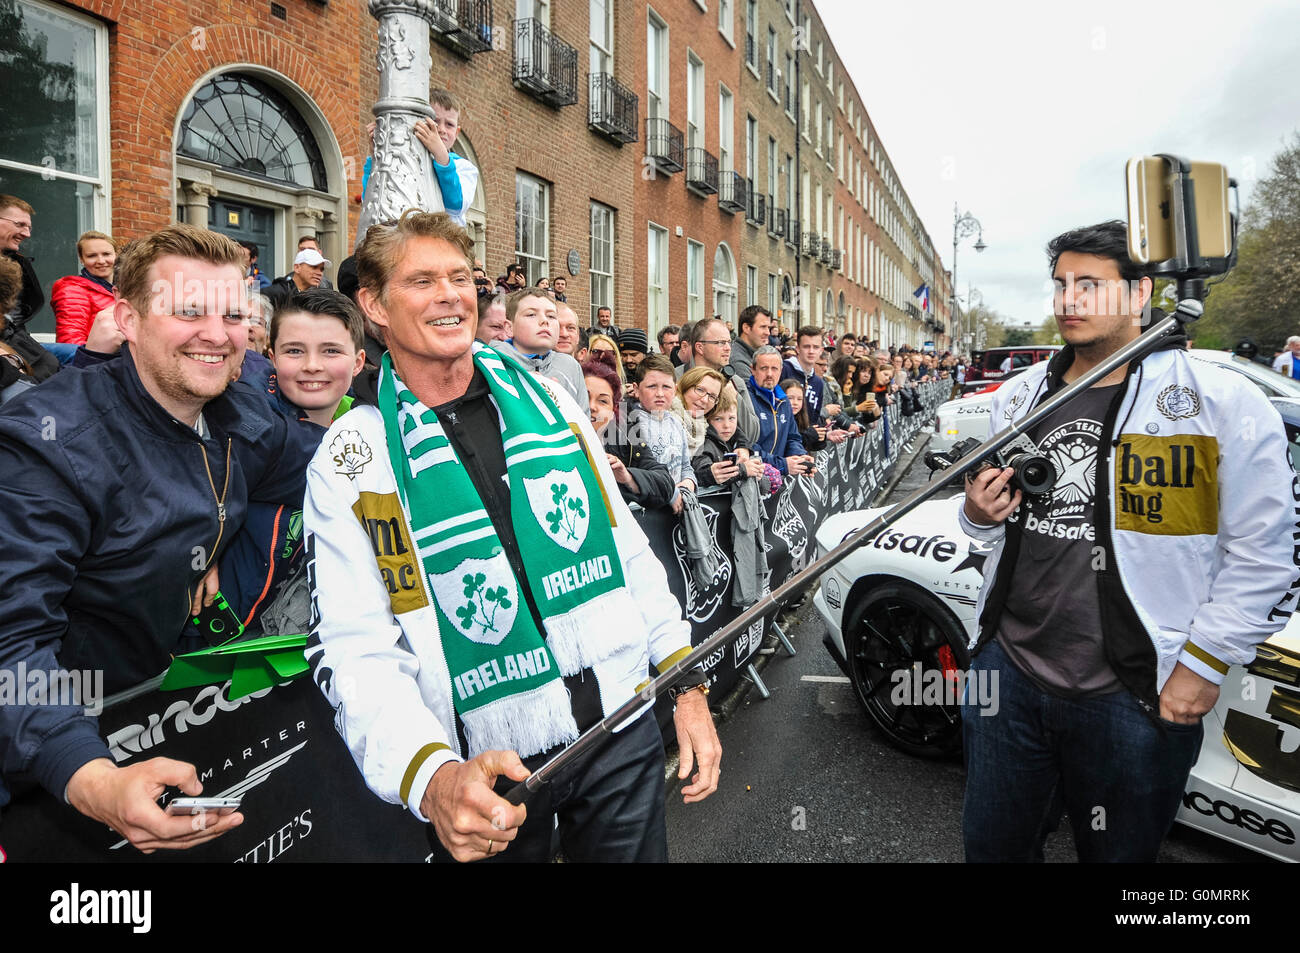 DUBLIN, IRLANDE. 01 mai 2016 - David Hasselhoff prend vos autoportraits avec fans comme il arrive pour le début de la Gumball 3000, sur un 6 journée de route vers Bucarest. Banque D'Images